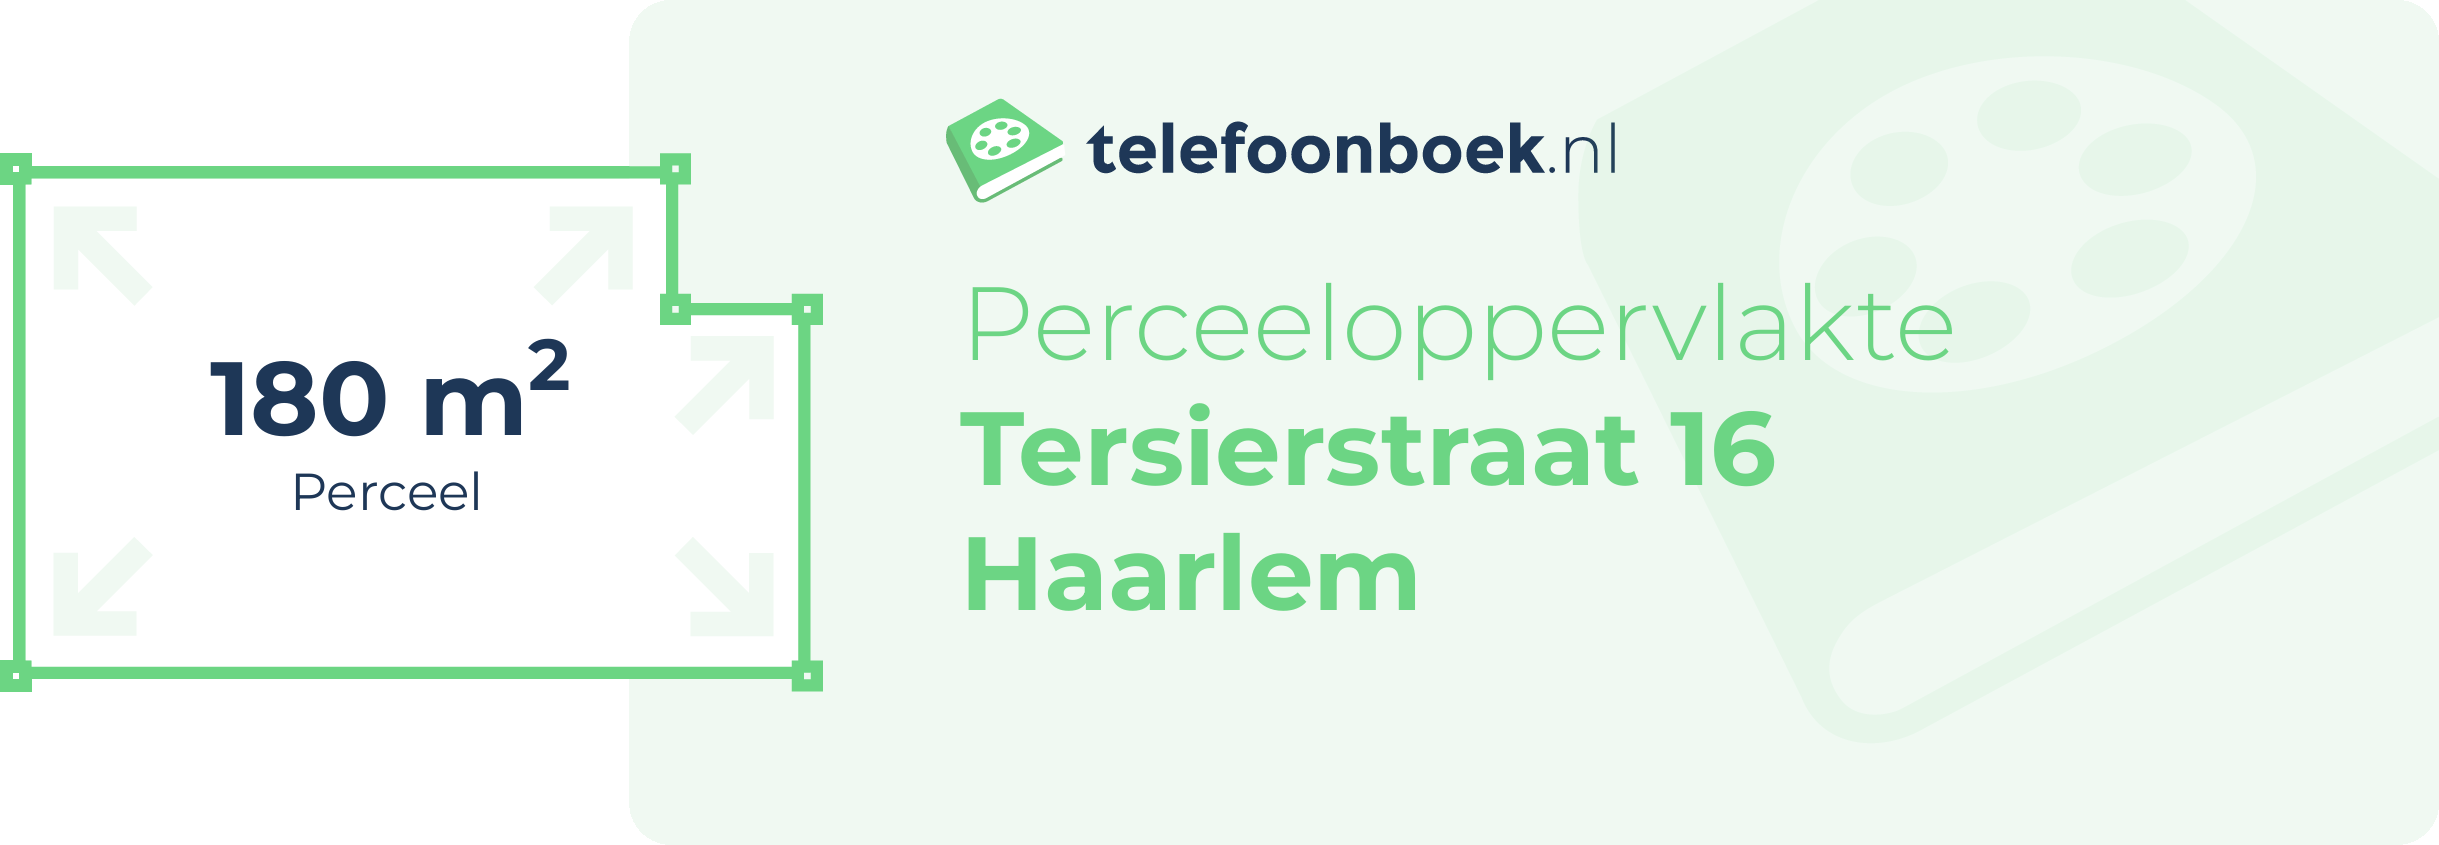 Perceeloppervlakte Tersierstraat 16 Haarlem